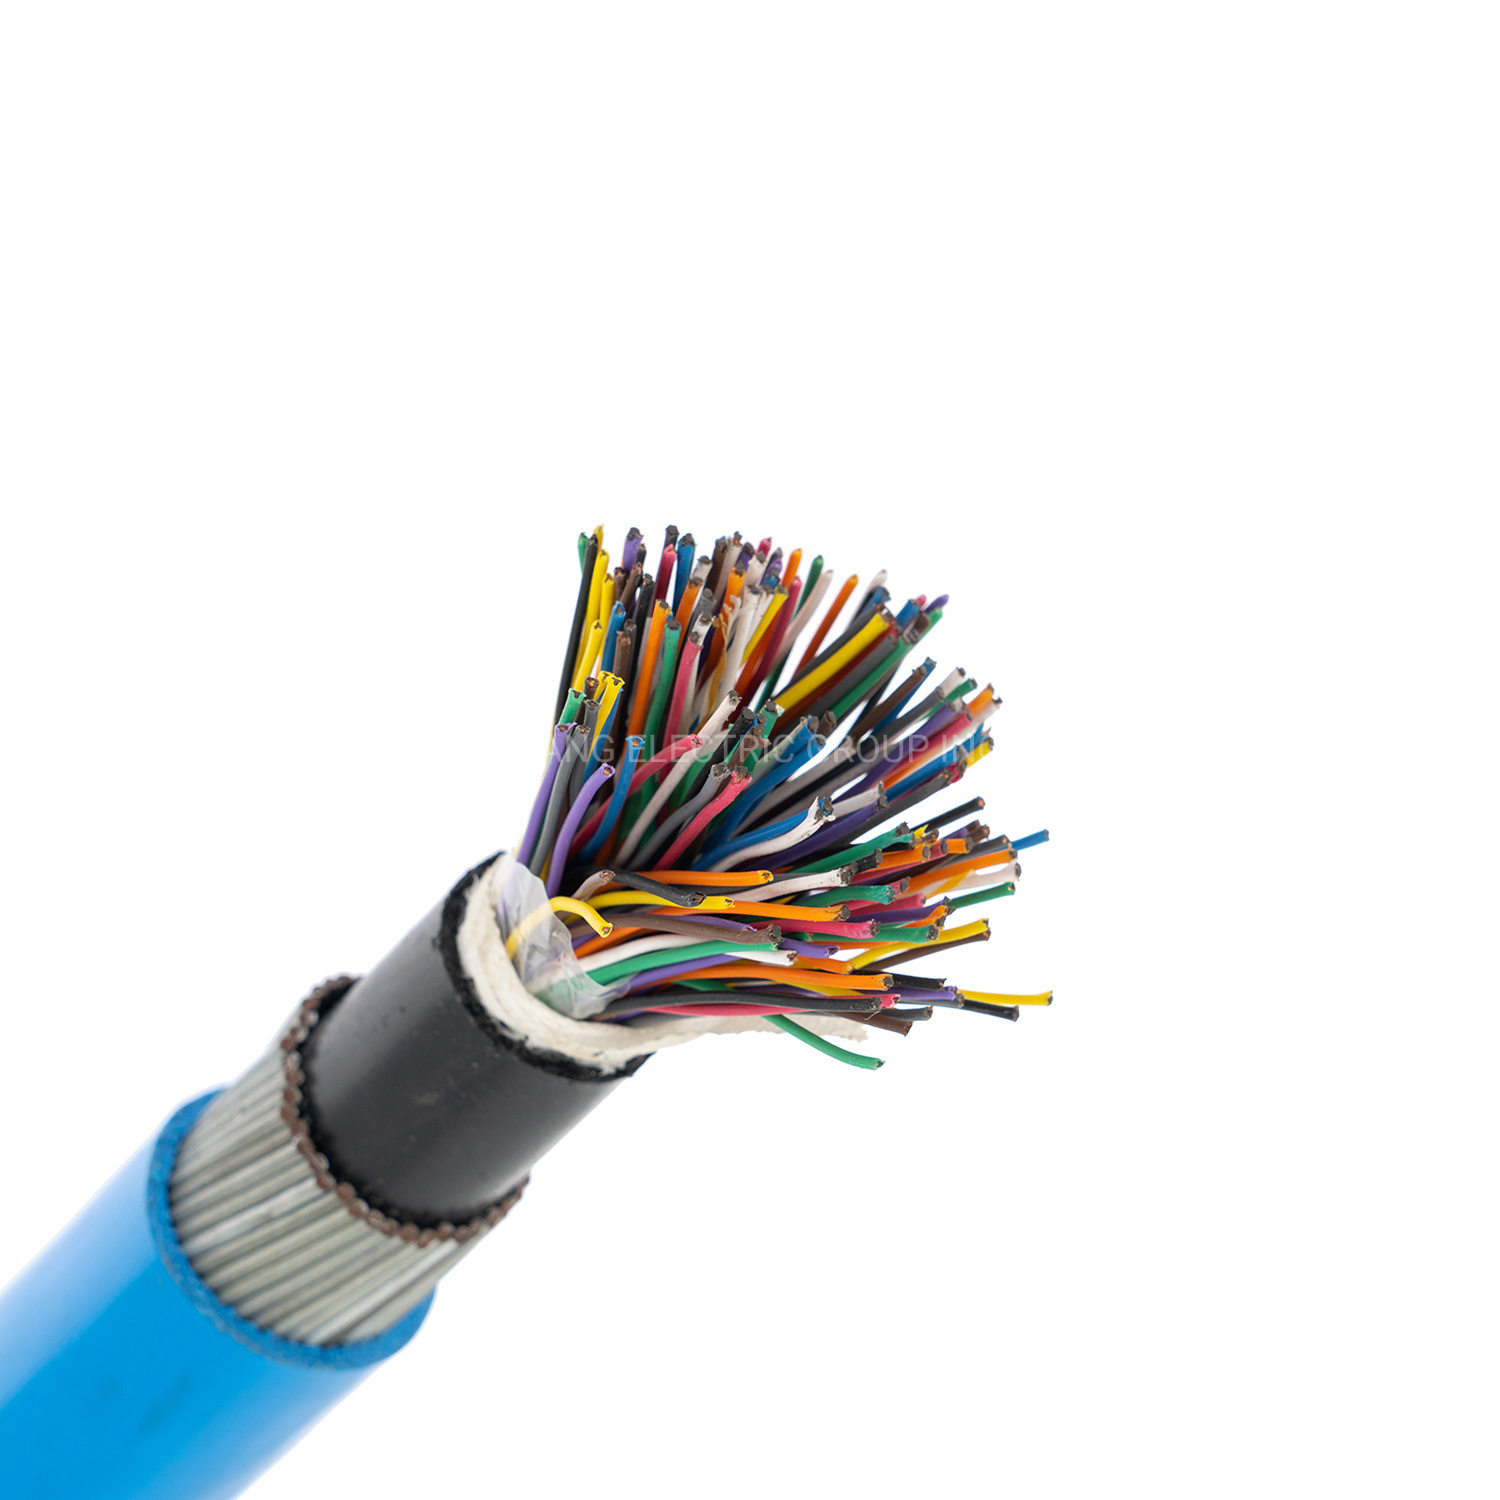 
                Cu/XLPE/заказчика опциональной/PVC/SWA/PVC-Fr Инструментальный кабель 0,5 мм 0,75 мм 1 мм 1,5 мм
            